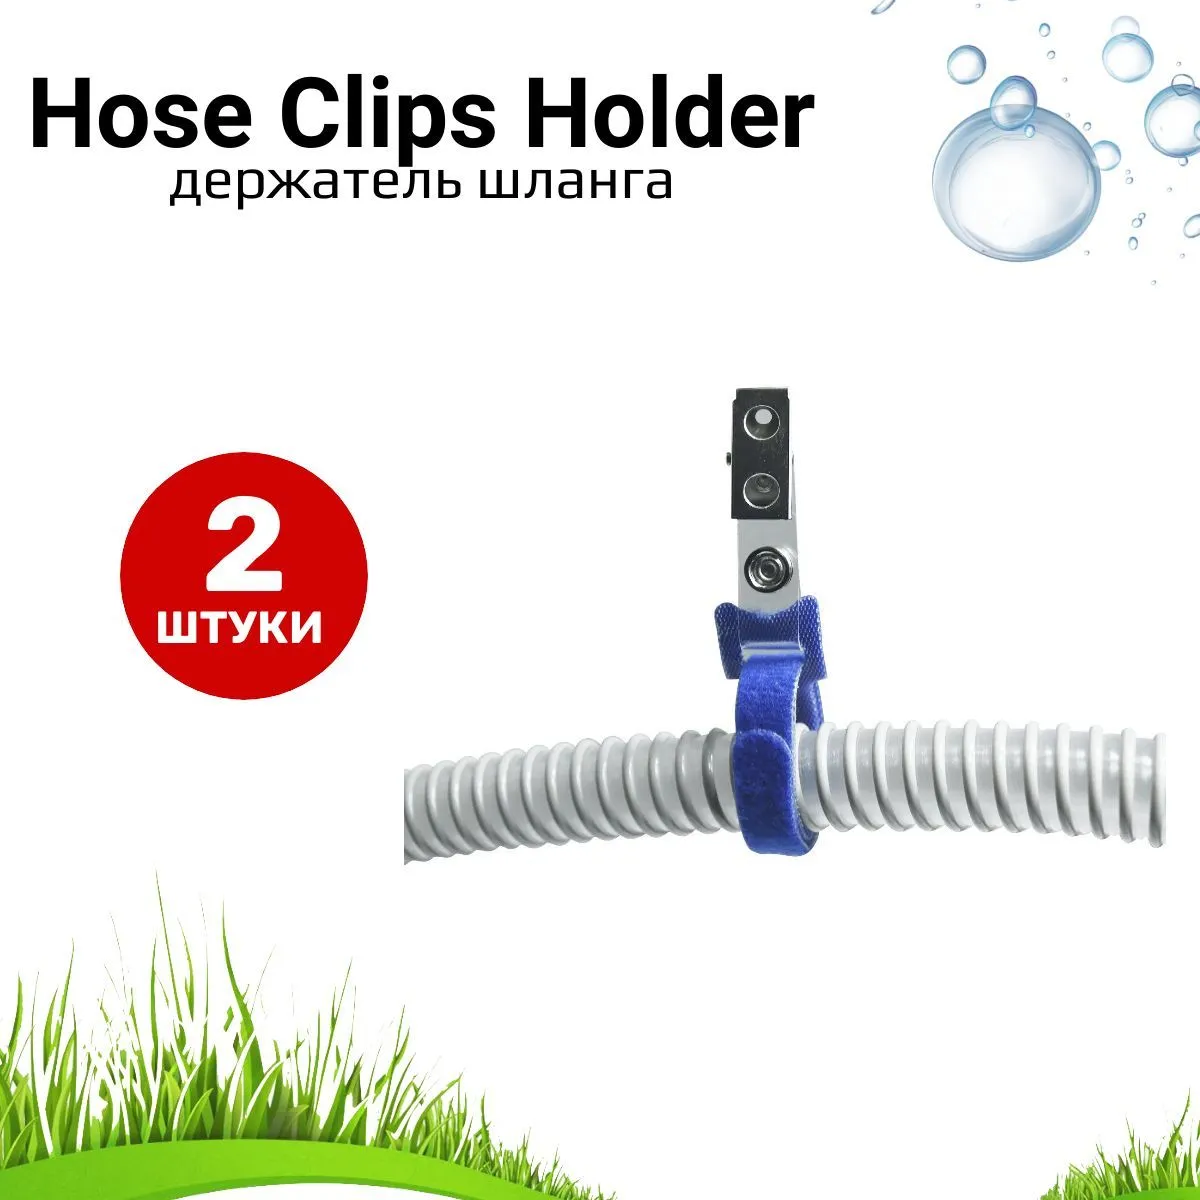 Hose Clips Holder клипса - держатель шланга СИПАП